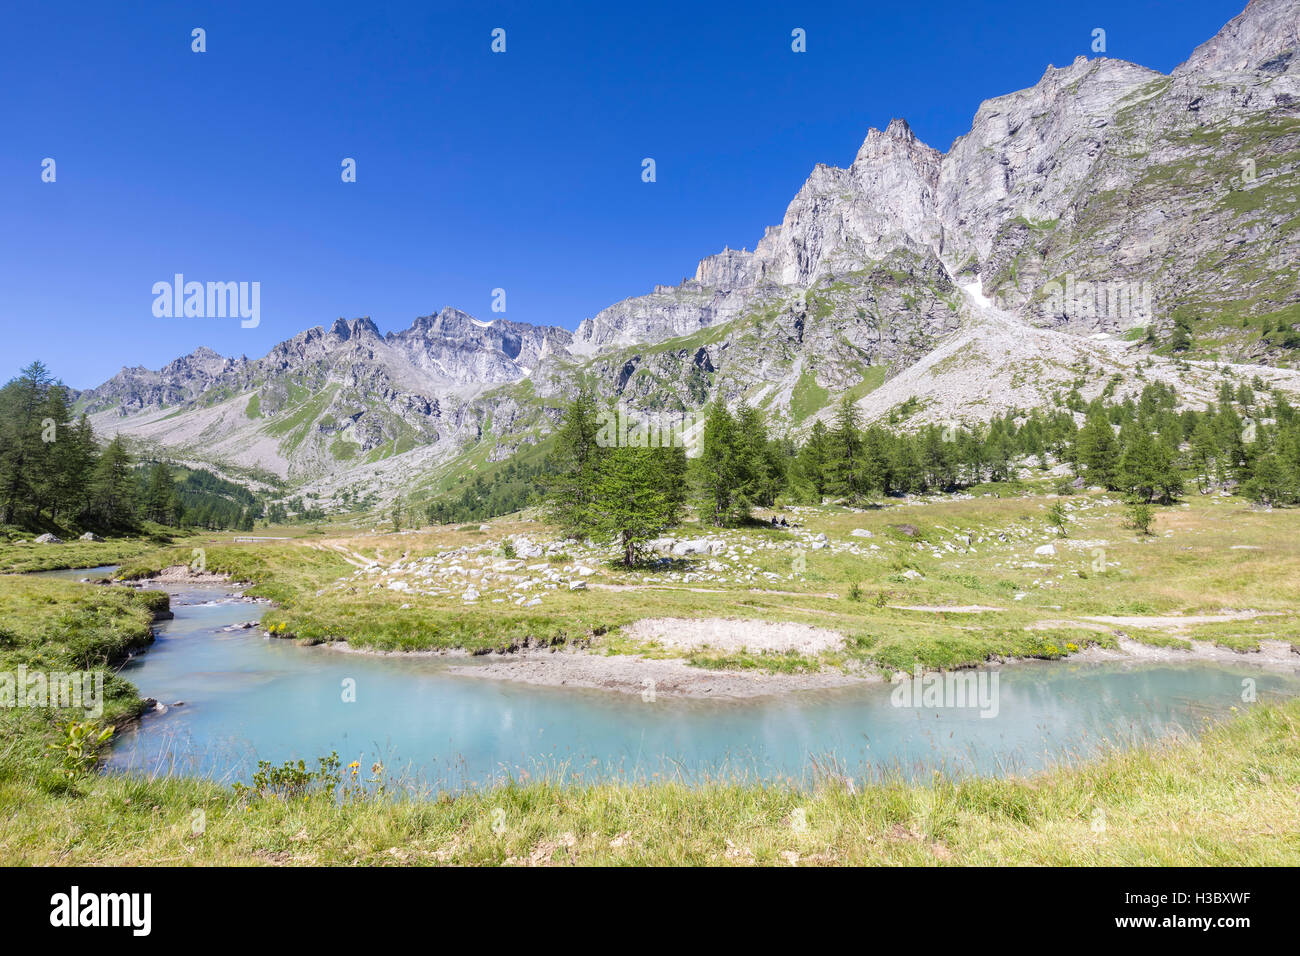 Virage sur la rivière Buscagna, Alpe Devero, Valle Antigorio, Piémont, Italie. Banque D'Images